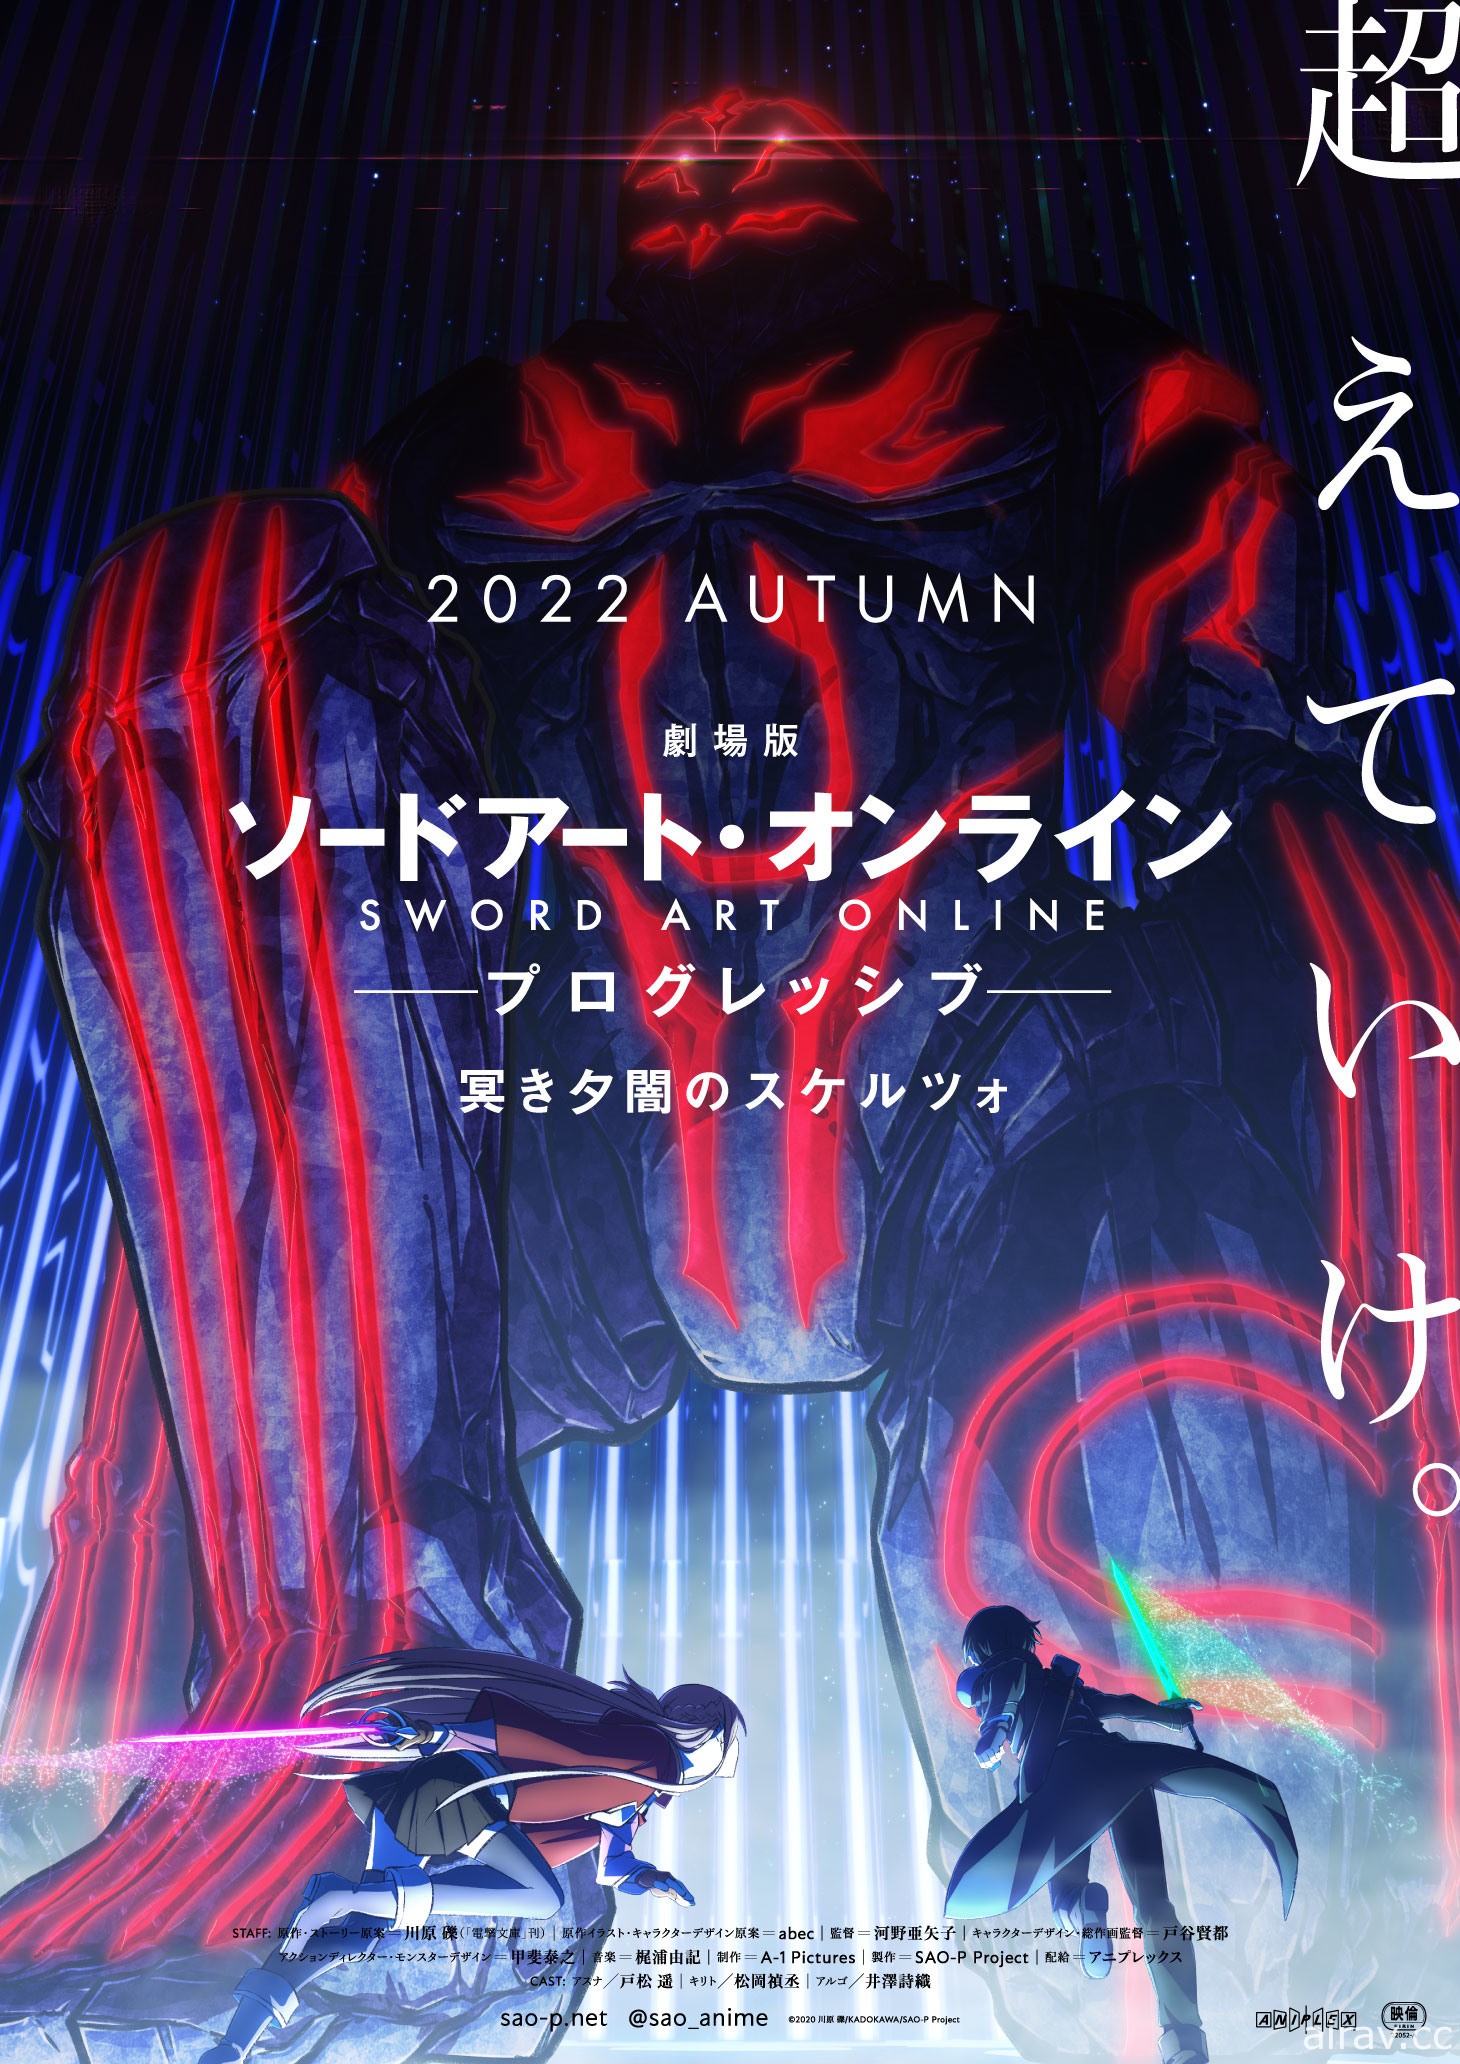 《刀剑神域 Progressive 阴沉薄暮的诙谐曲》公开概念视觉图 今年秋季日本上映